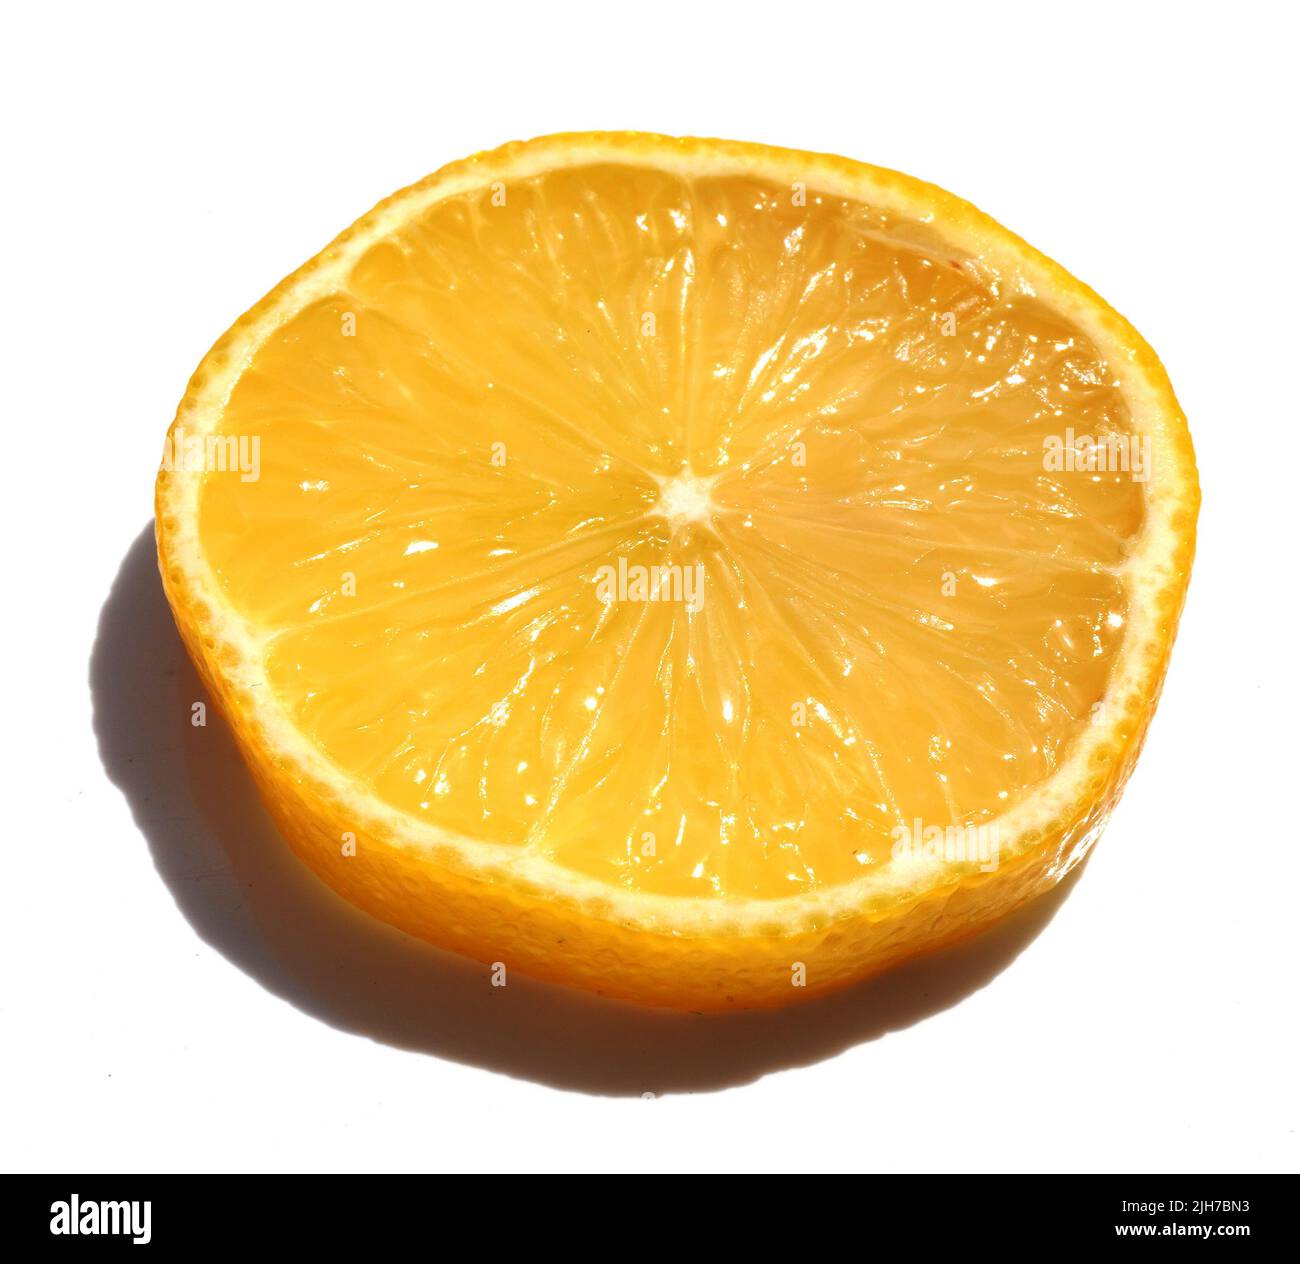 Close-Up Of Lemon Against White Background stock photo Stock Photo